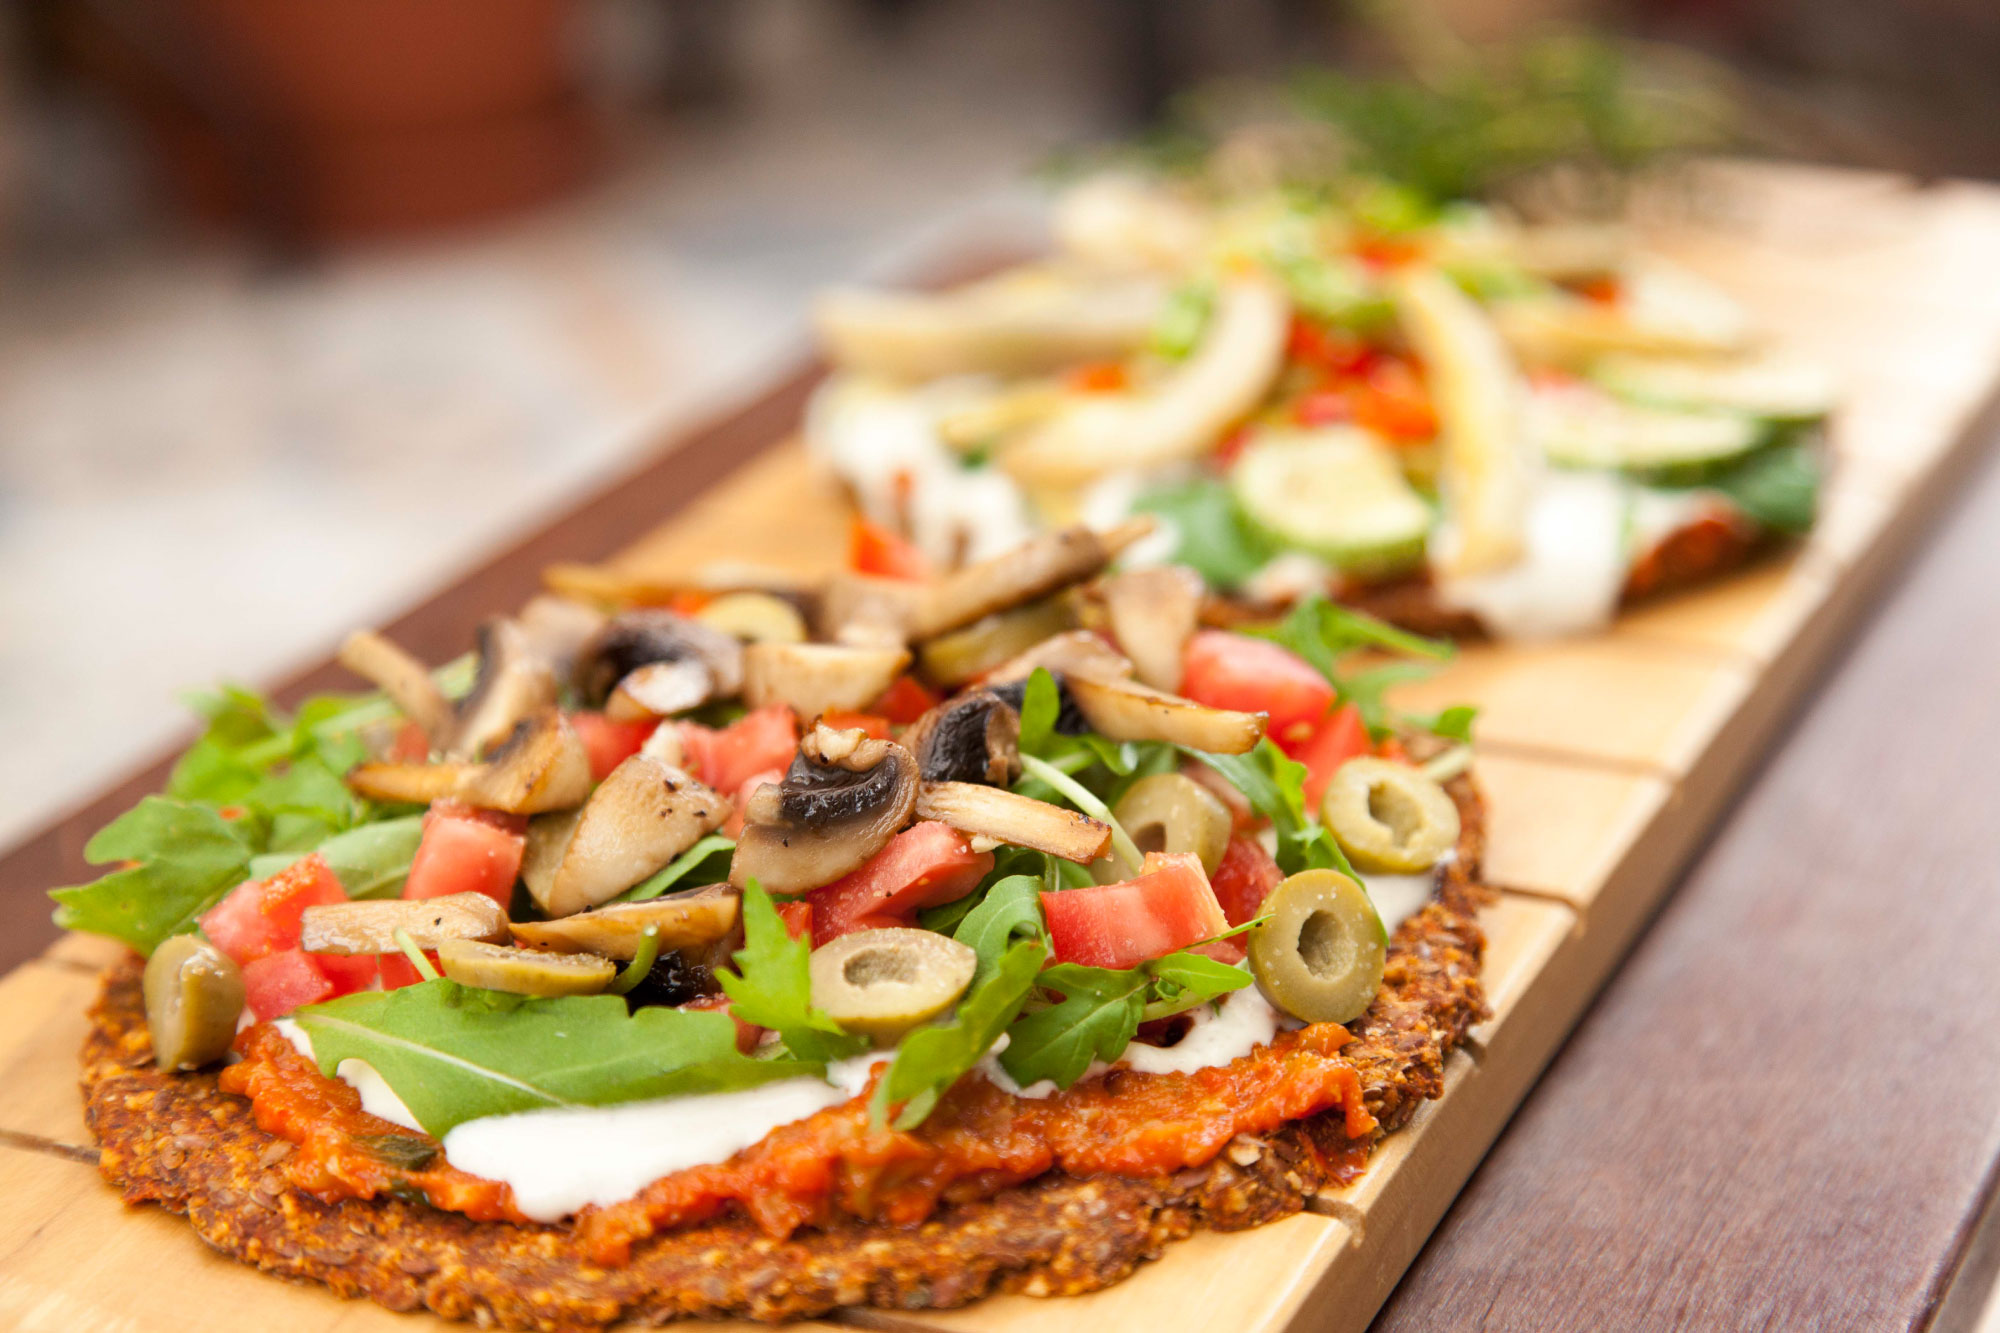 Las pizza vegana no incluyen queso, y la masa suele hacerse con distintas harinas o cereales (foto: Raw Café, Perú)